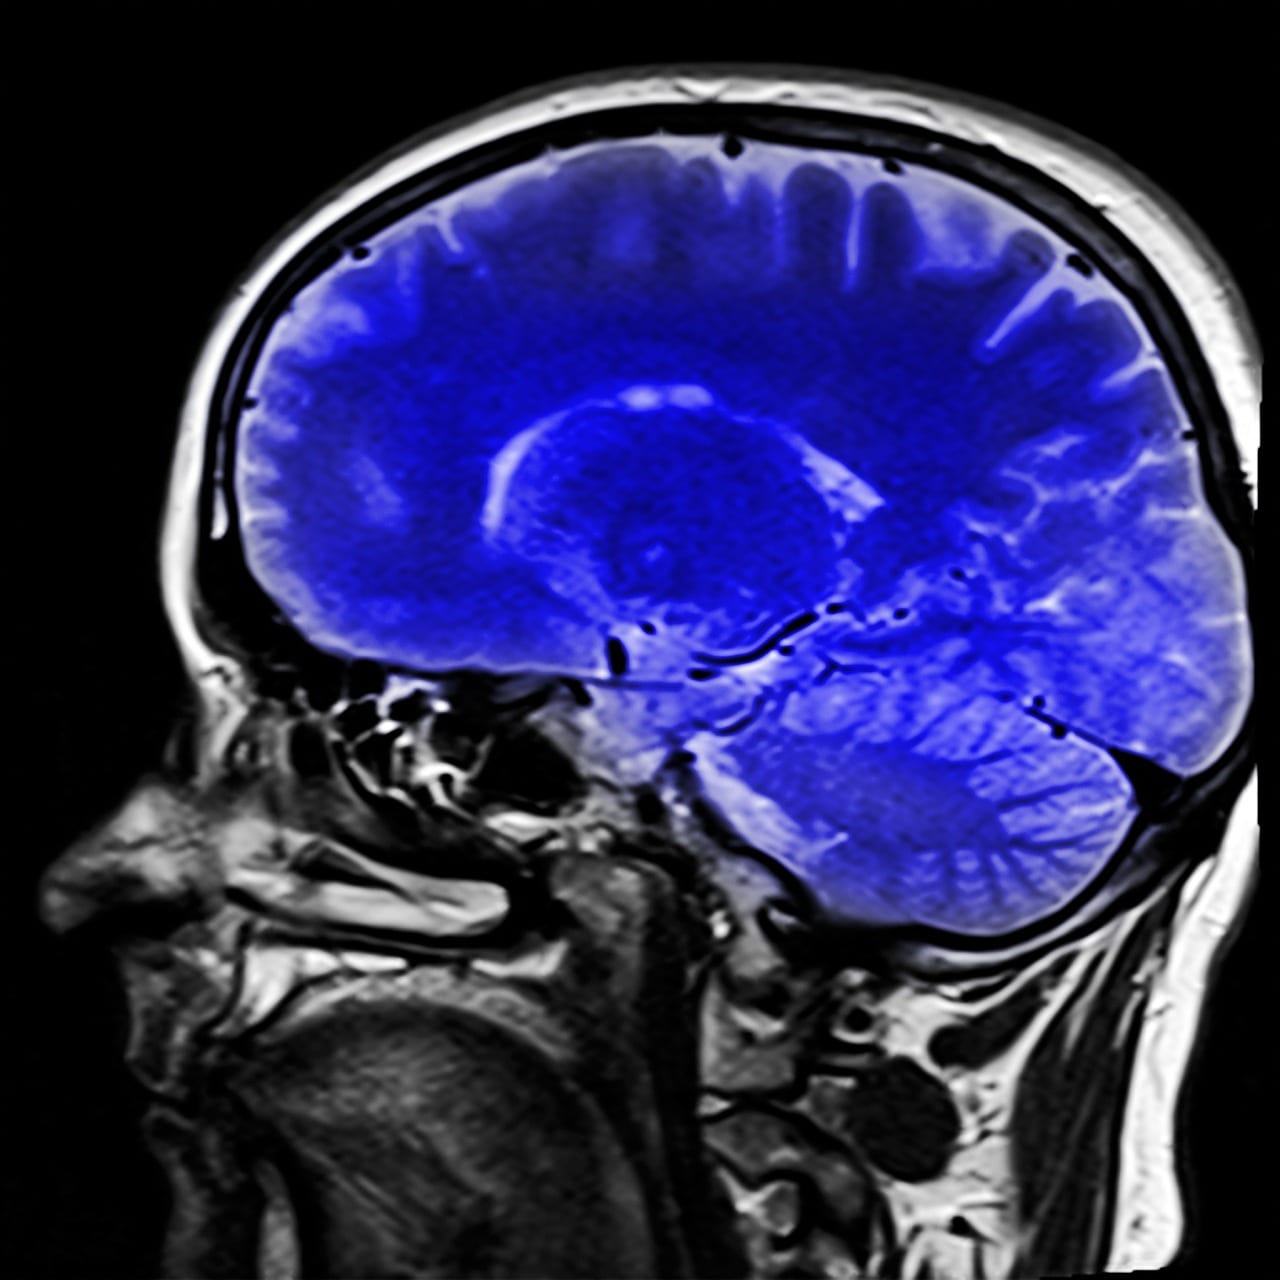 L’imagerie médicale peut désormais visualiser les vaisseaux sanguins cérébraux